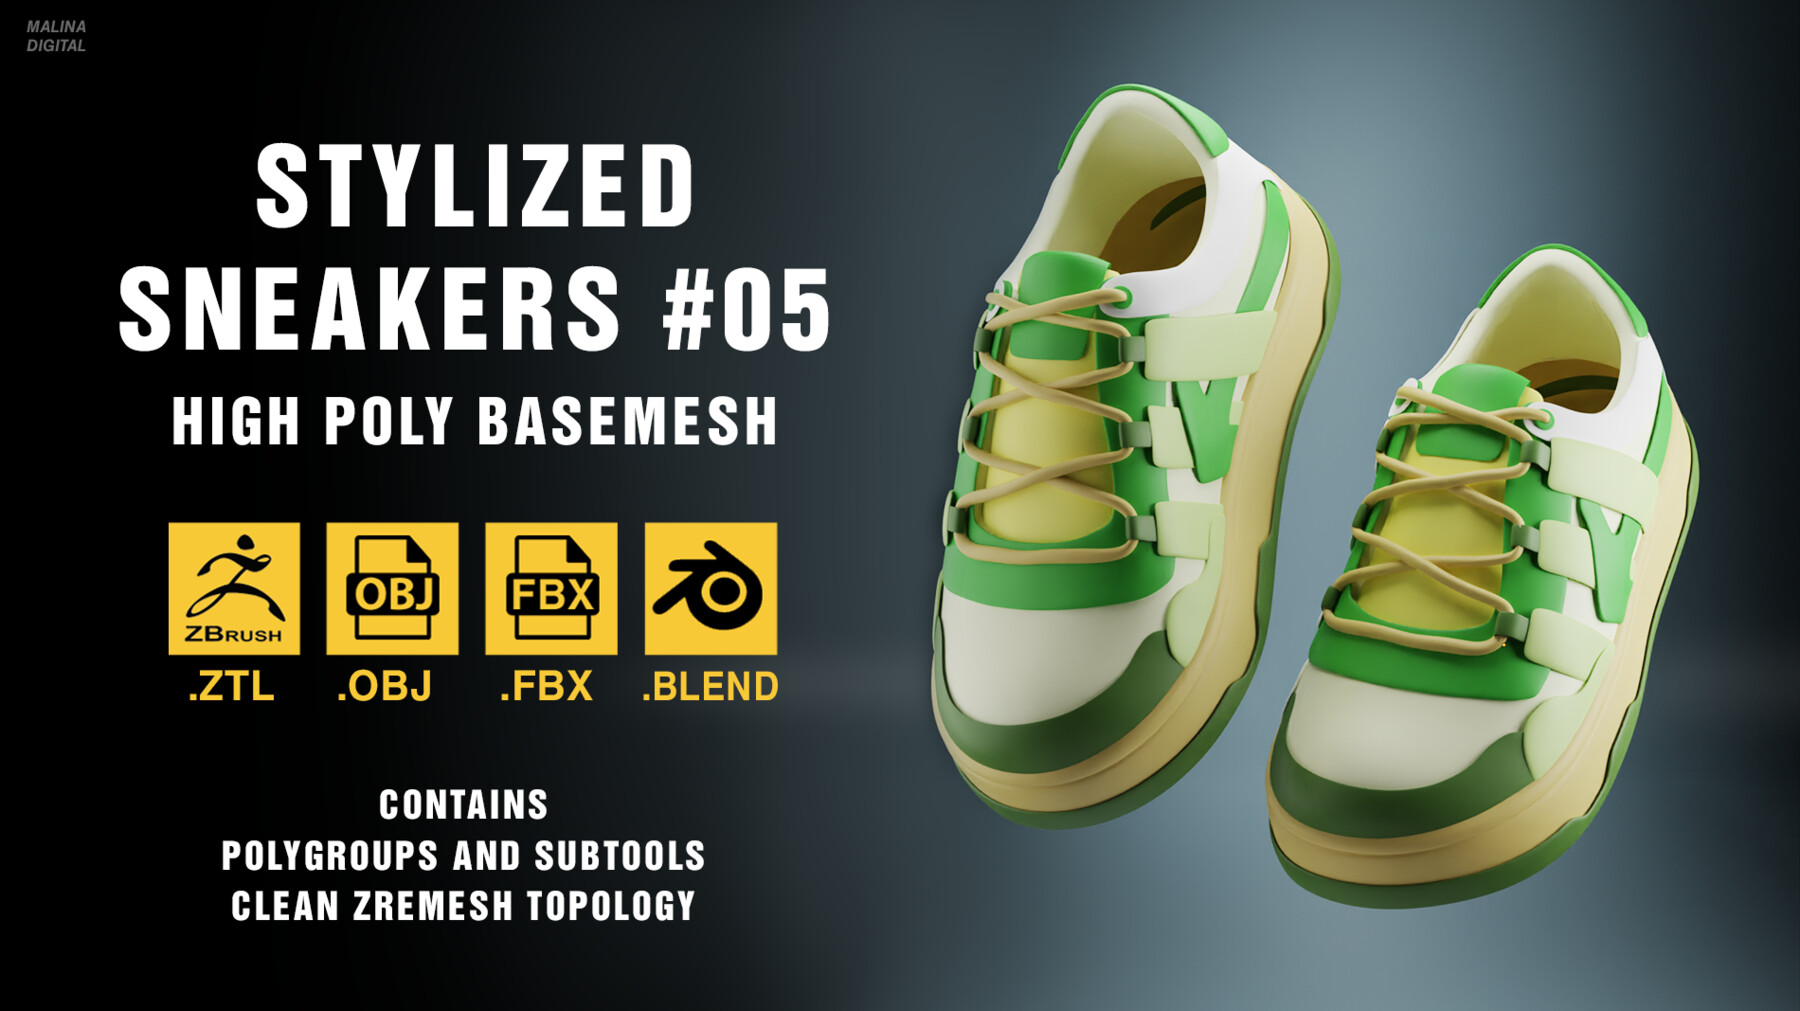 ArtStation - Stylized sneakers #05 basemesh (ZTL + OBJ + FBX + BLEND ...